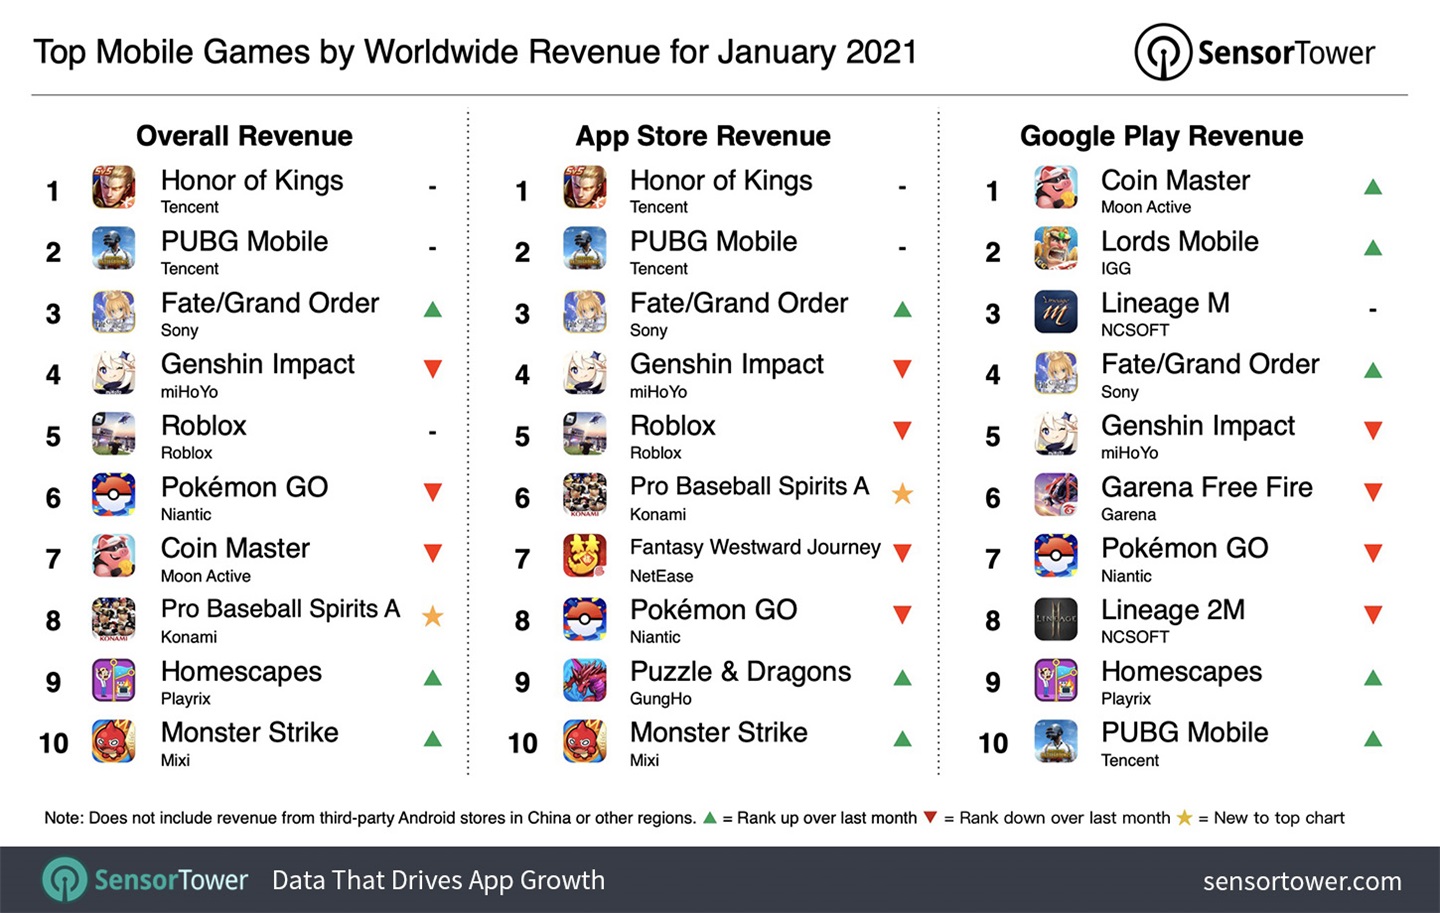 《王者荣耀》为 2021 年 1 月全球收入最高的手游，玩家总支出 17.25 亿人民币